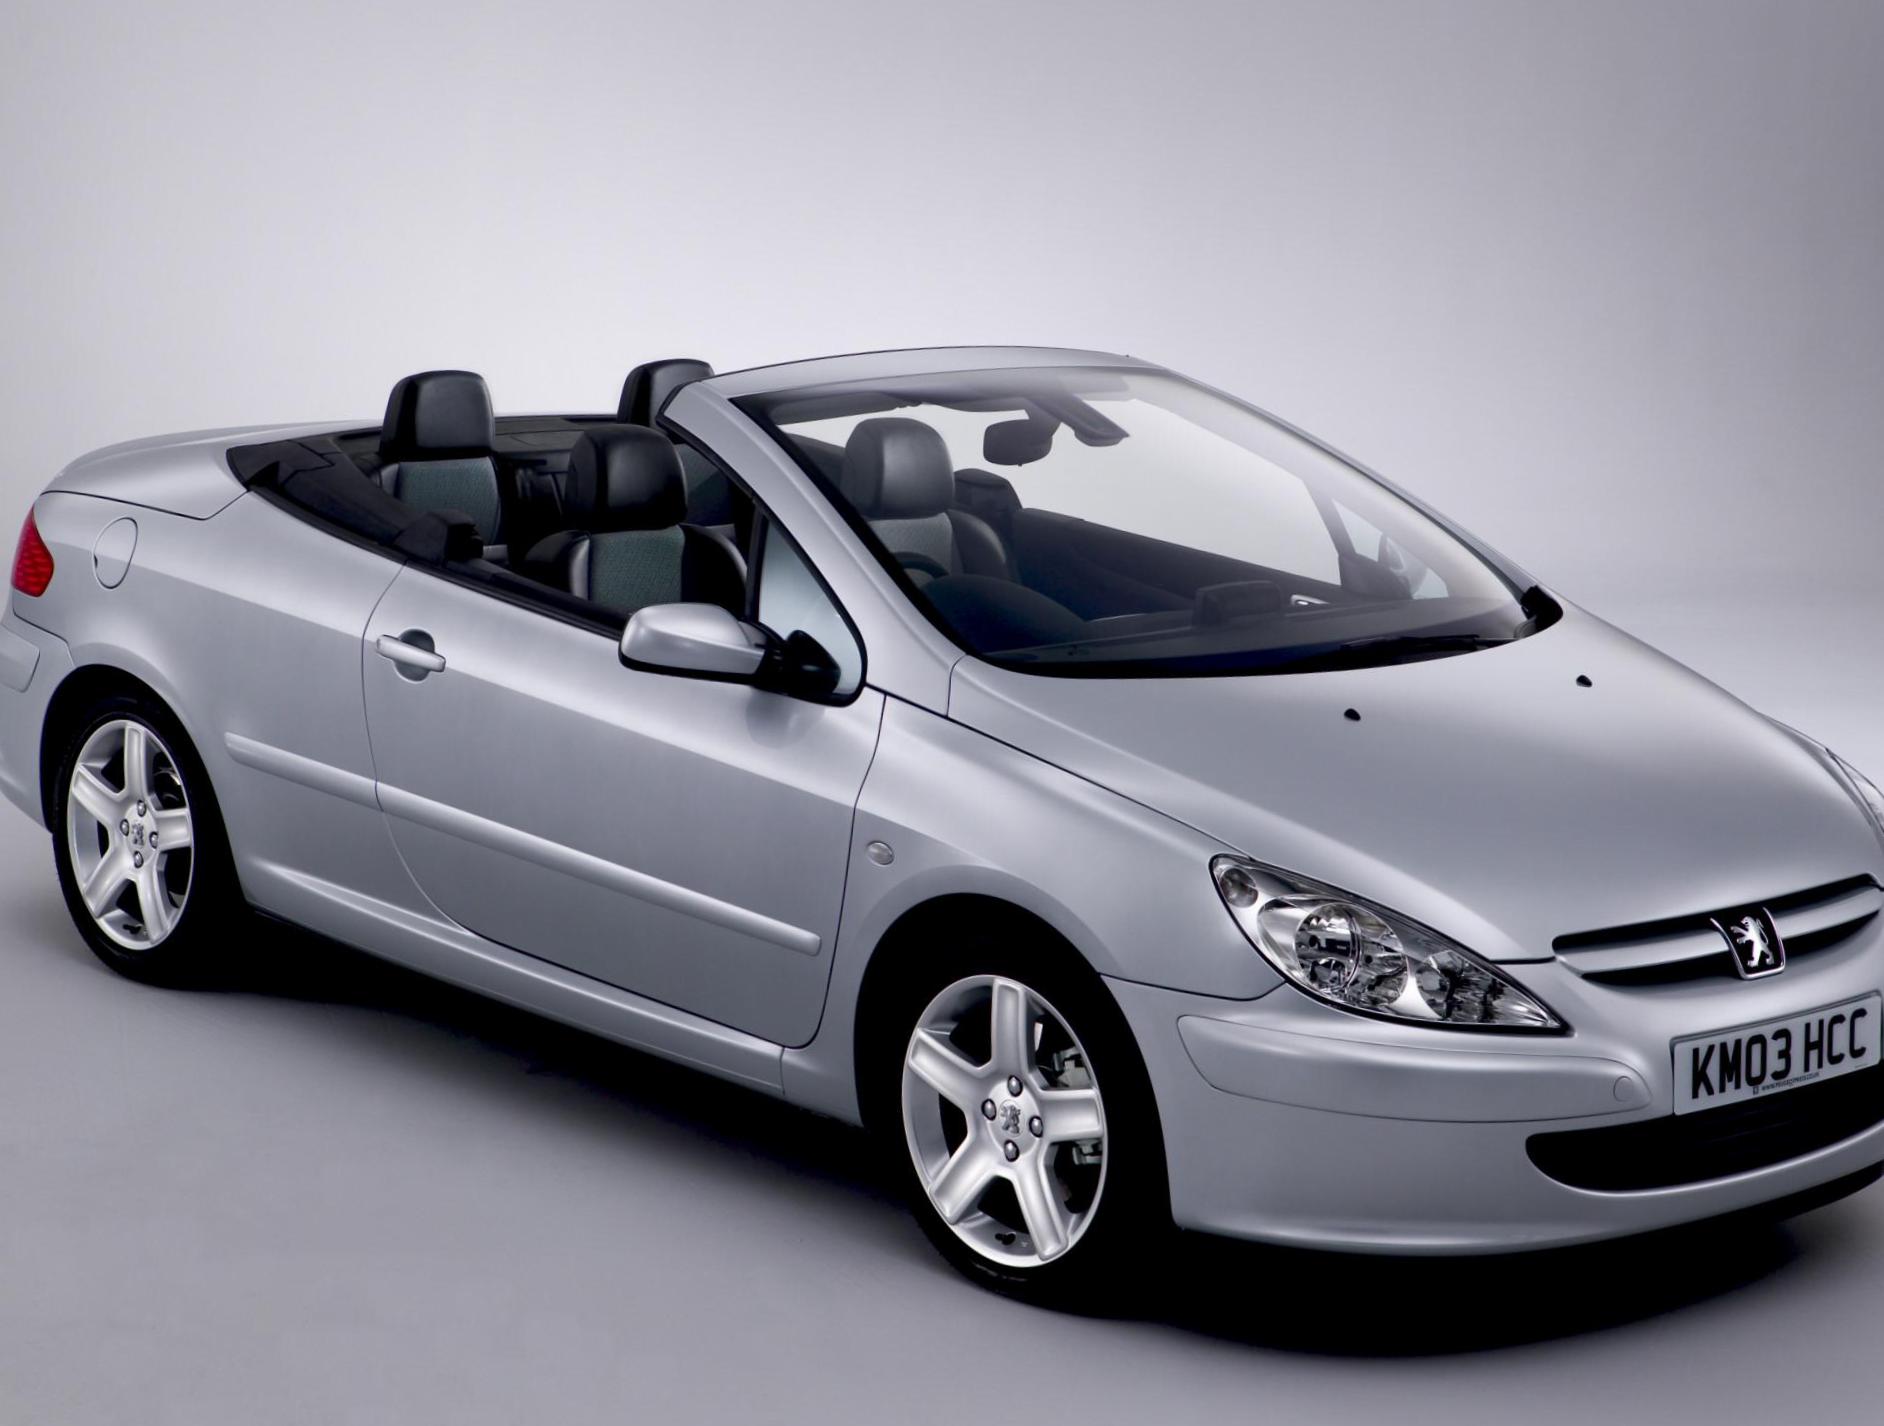 Peugeot 307 CC review 2011